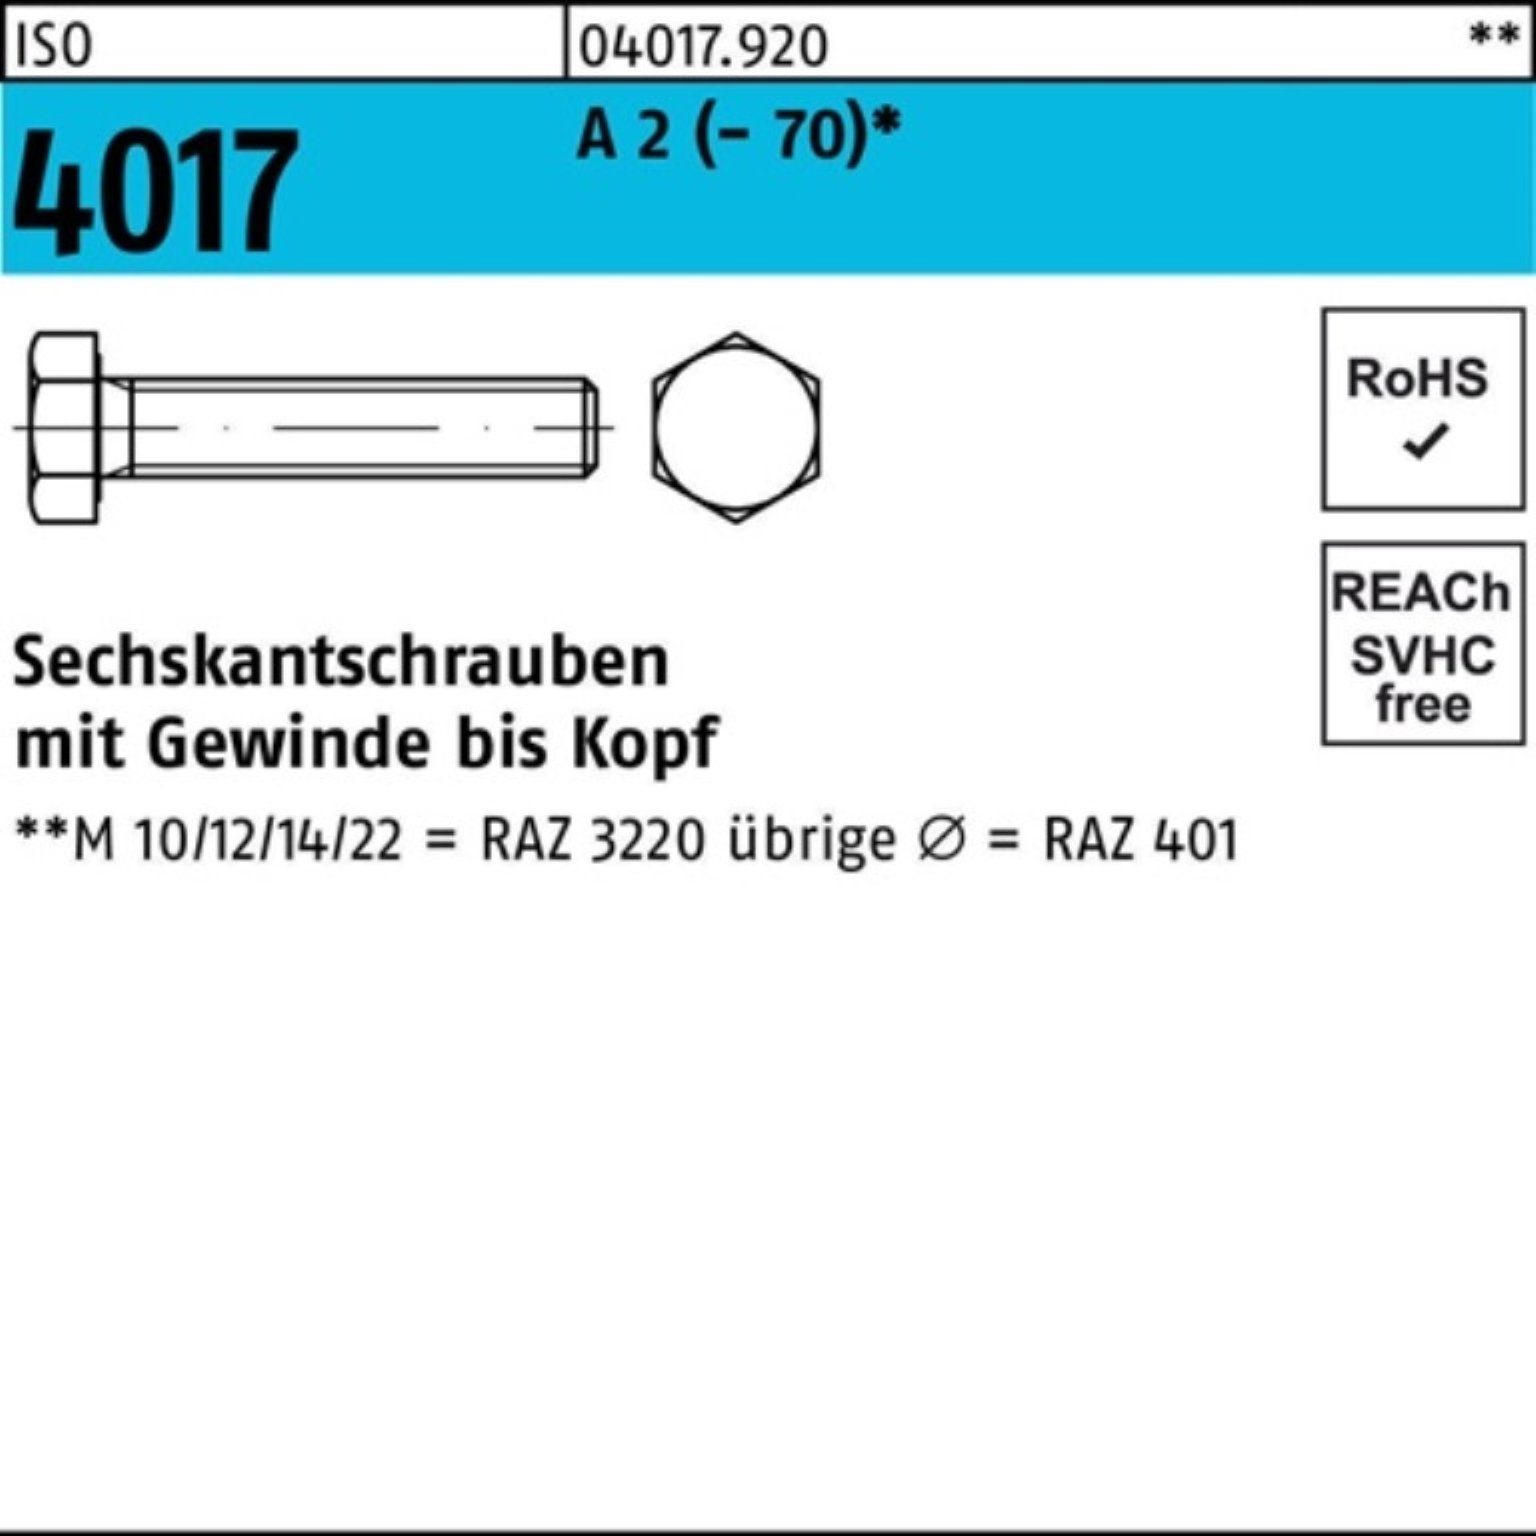 Bufab Sechskantschraube 500er Pack Sechskantschraube ISO 4017 VG M6x 14 A 2 (70) 500 Stück